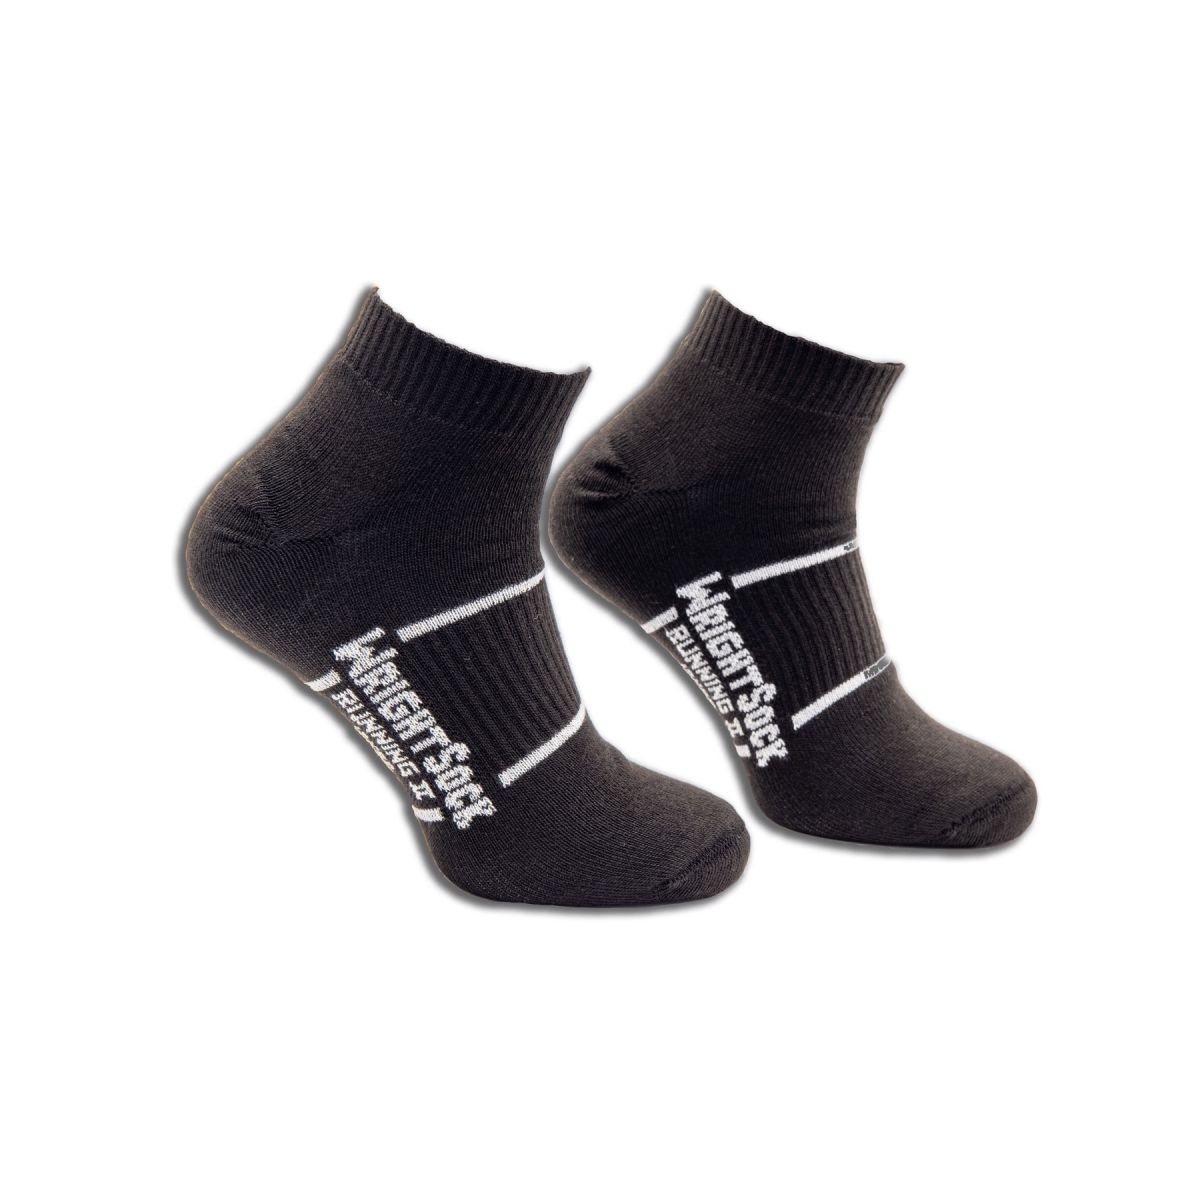 Wrightsock Unisex Running II Quarter Socks Black - 865.0300 BLACK - BLACK, Small